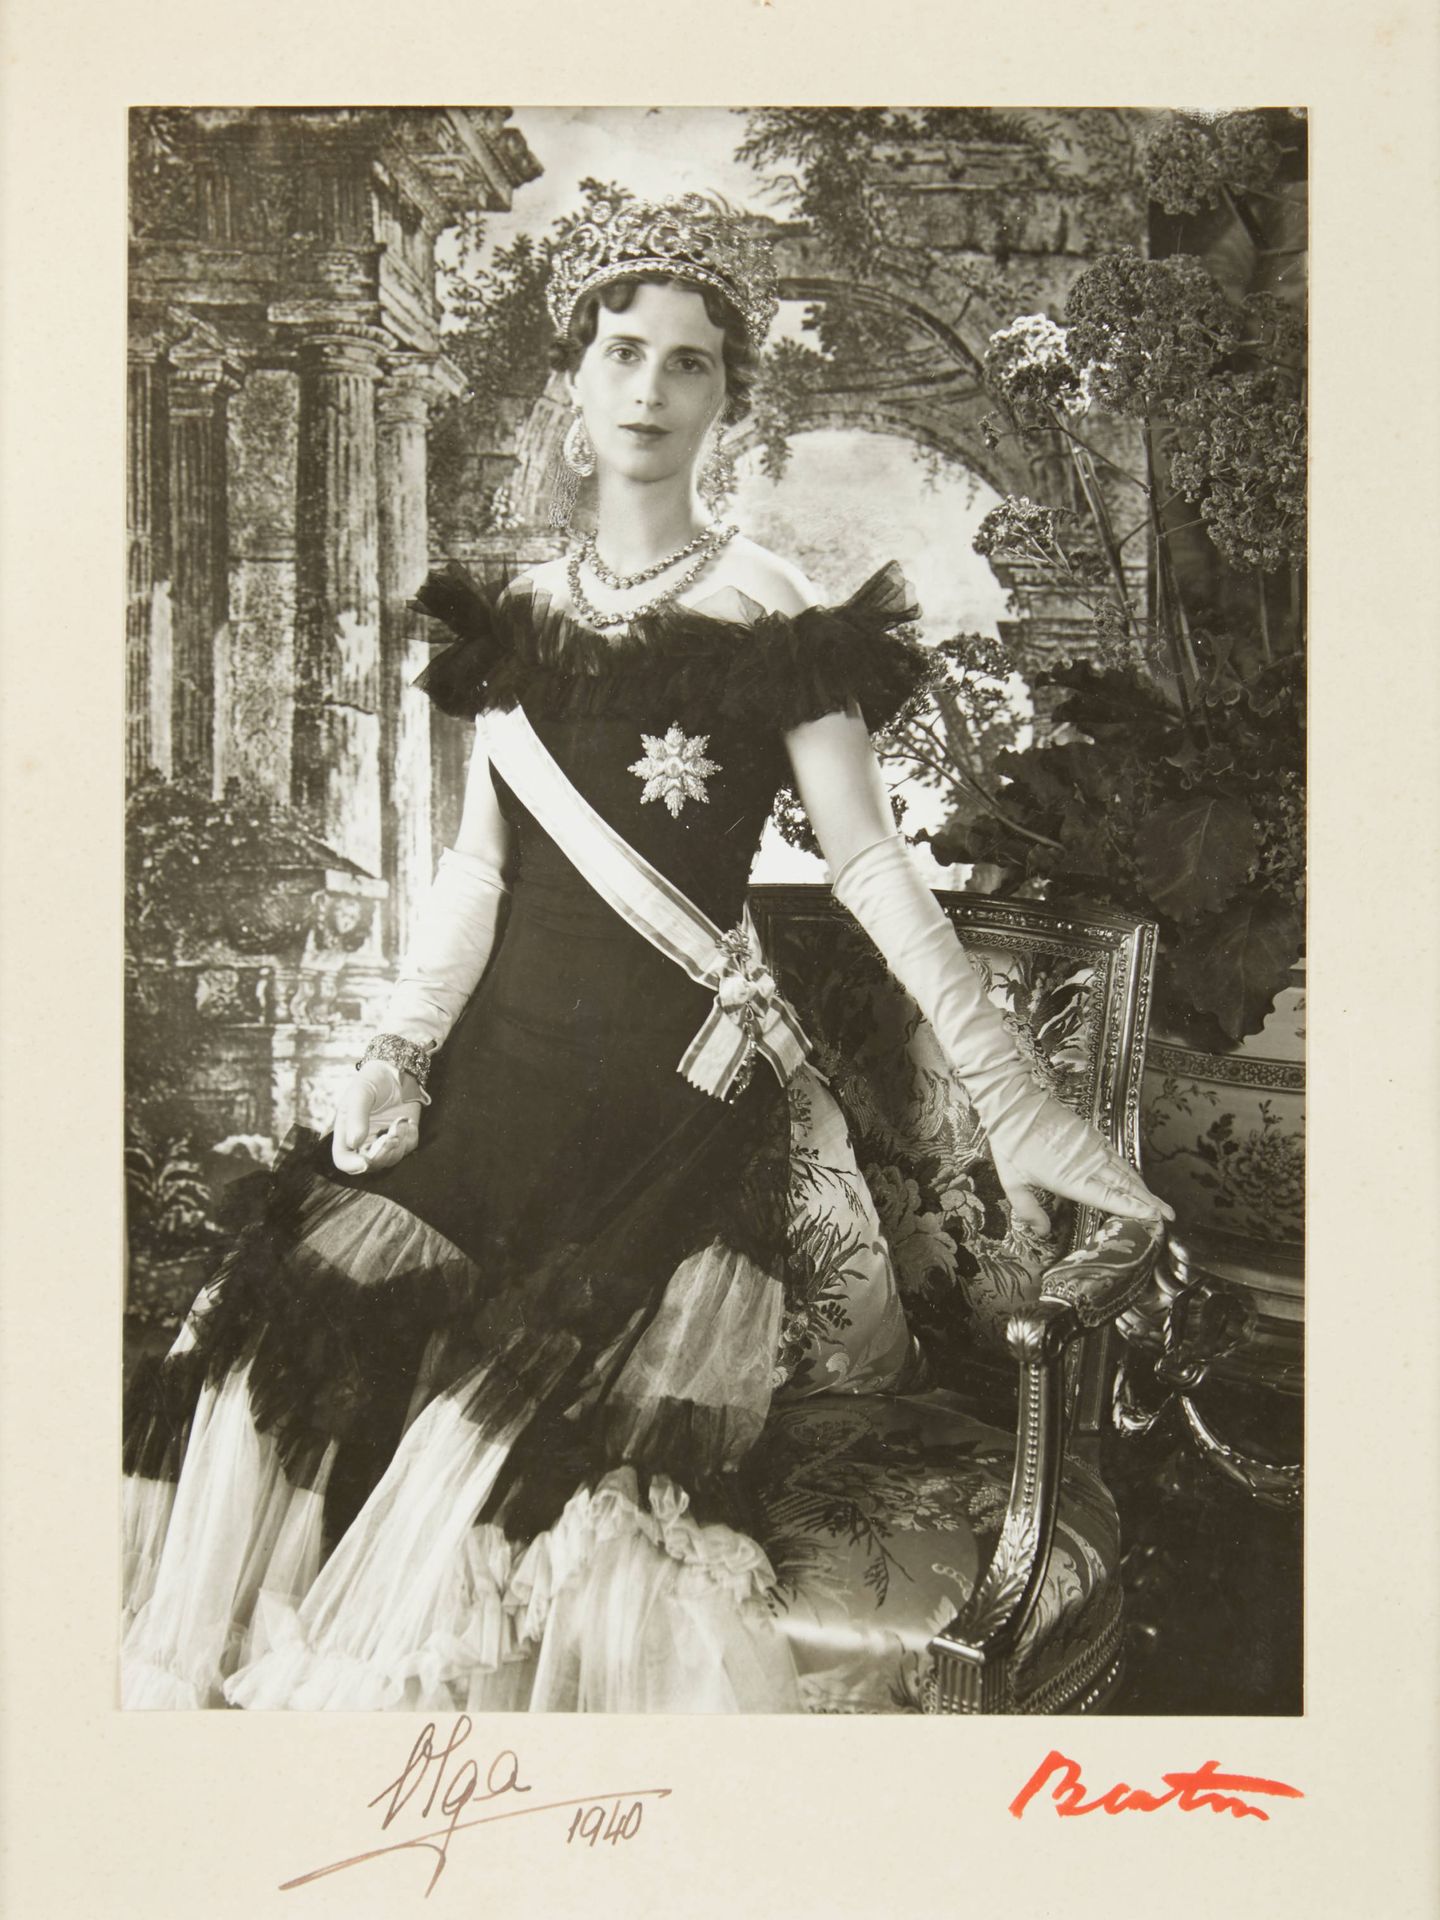 Una de las imágenes que recoge el libro, la princesa Olga de Grecia fotografiada por Cecil Beaton. (Cortesía Rizzoli)